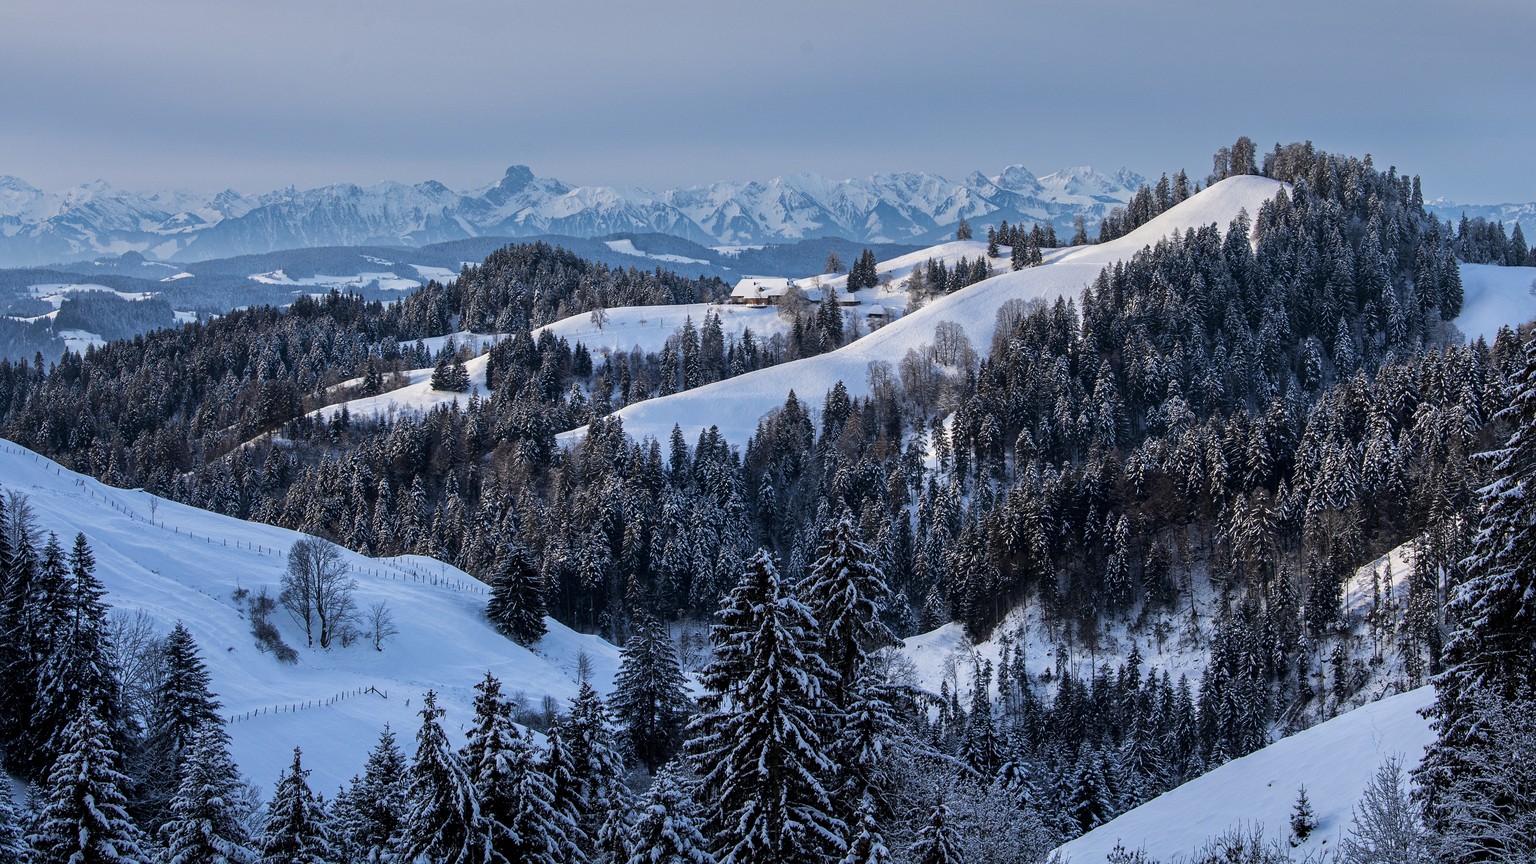 Morgenstimmung mit Blick ins verschneite und winterliche Emmental und die Berner Alpen, am Samstag, 9. Januar 2021 auf der Luederen im Emmental. (KEYSTONE /Marcel Bieri)